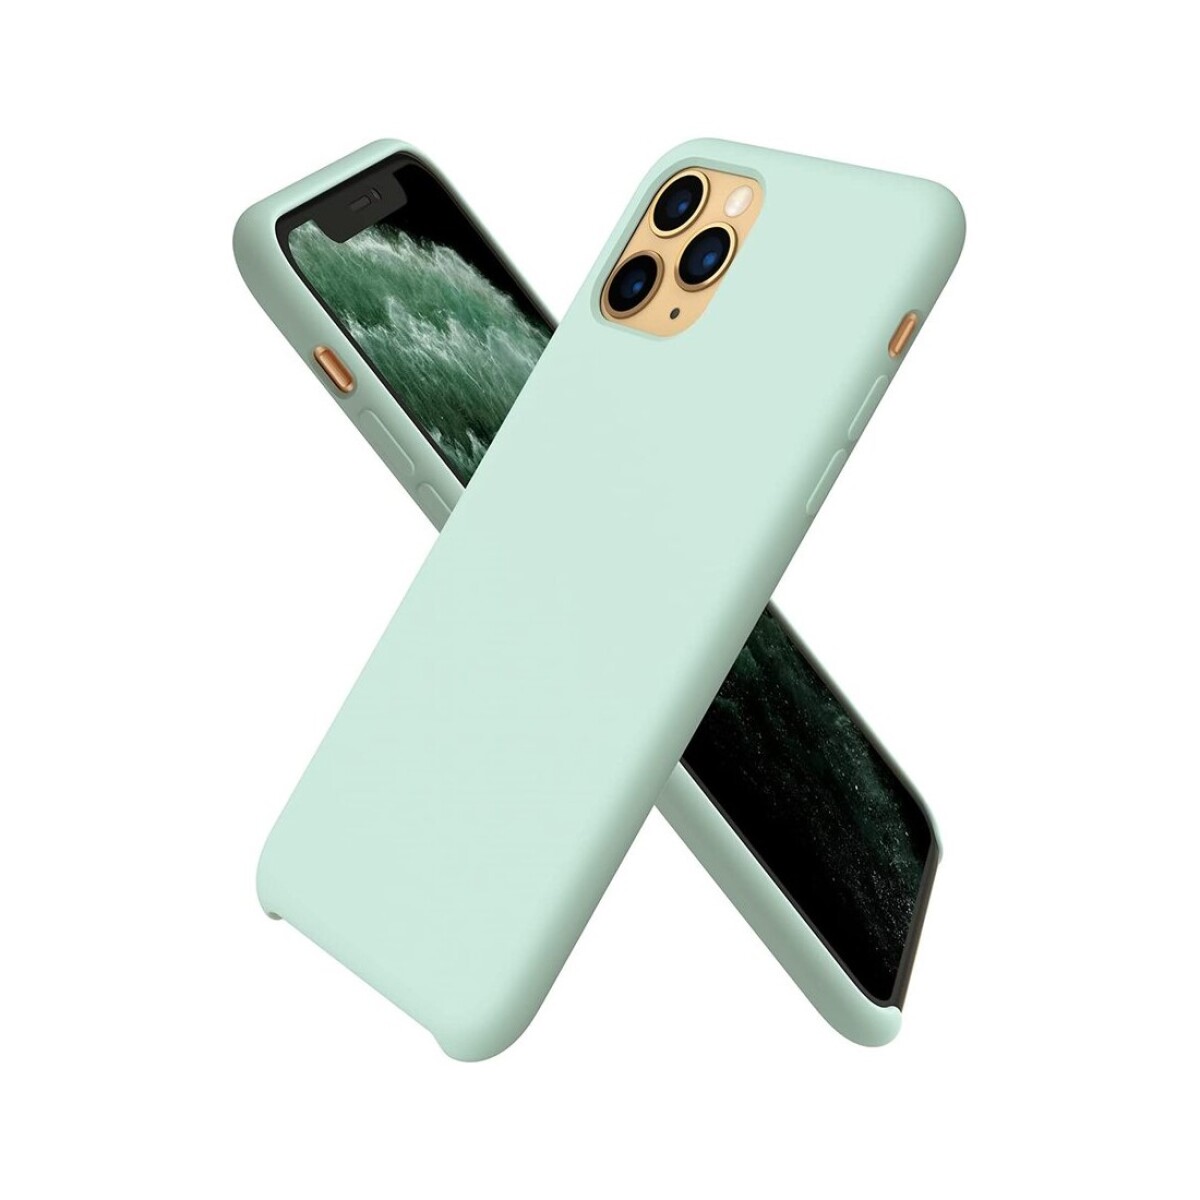 Protector case de silicona para iphone 11 pro Menta